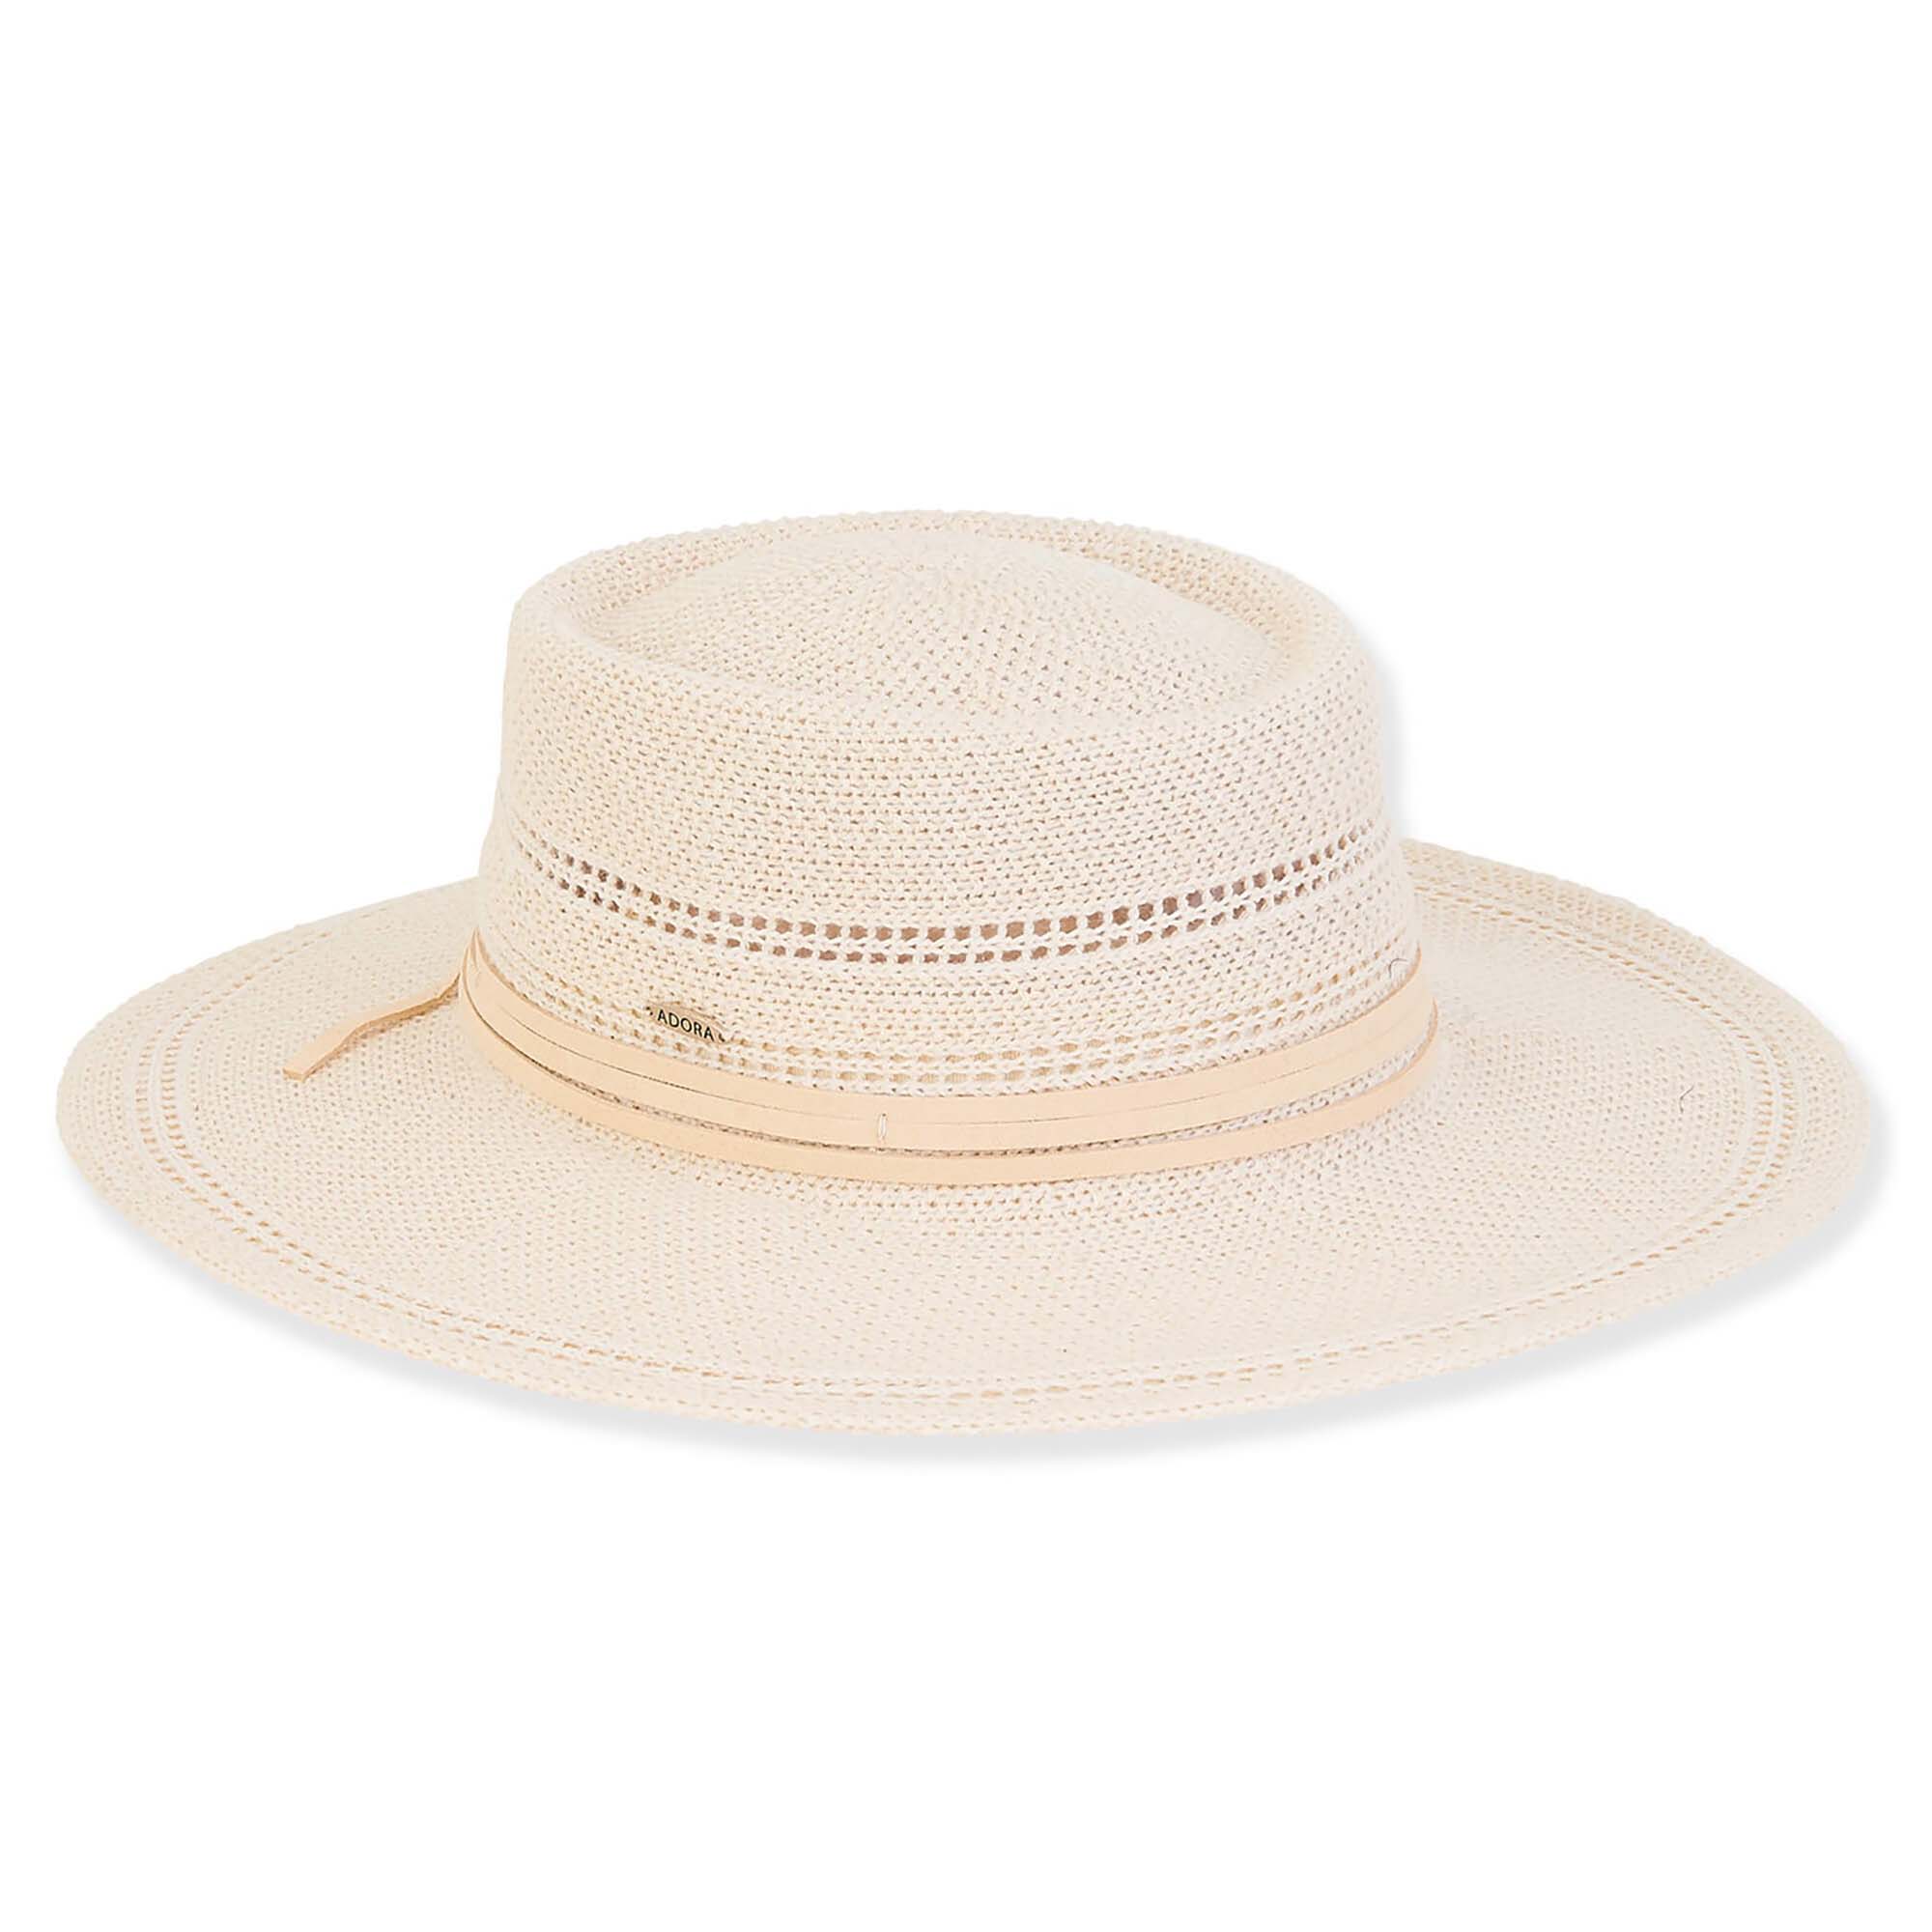 Fashion Knit Gaucho Hat with Waxed Cord - Adora® Hats Bolero Hat Adora Hats AD1485A Beige Medium (57 cm) 